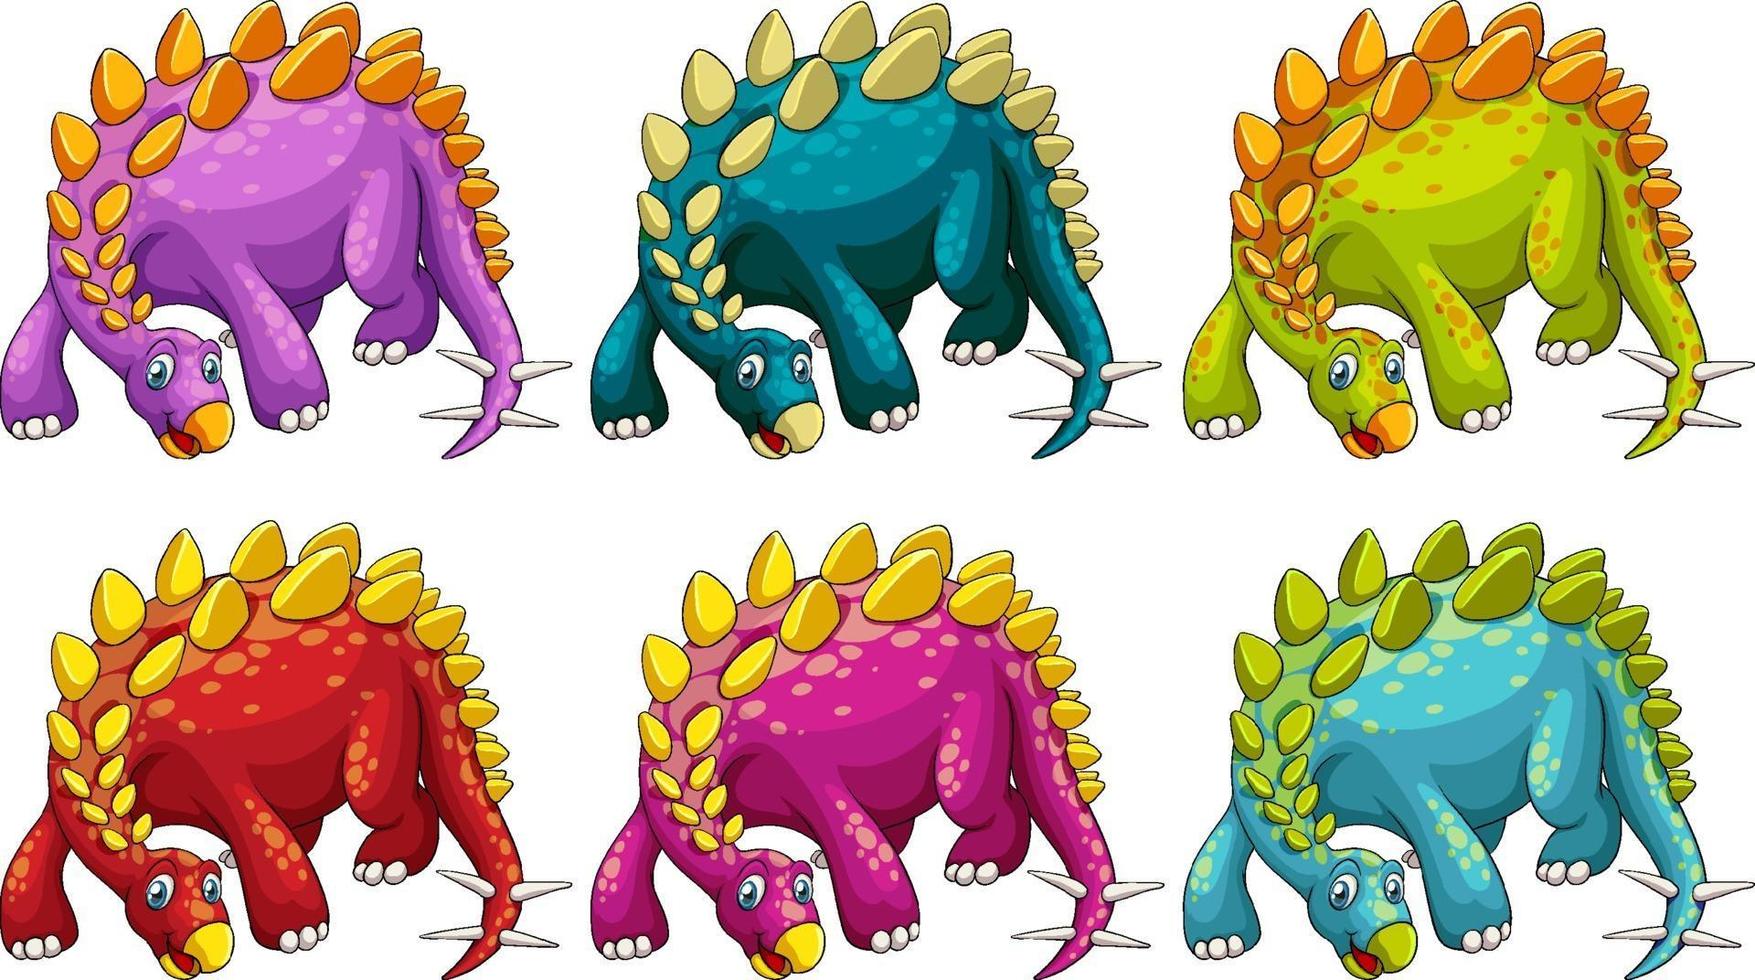 een stripfiguur van een stegosaurus-dinosaurus vector